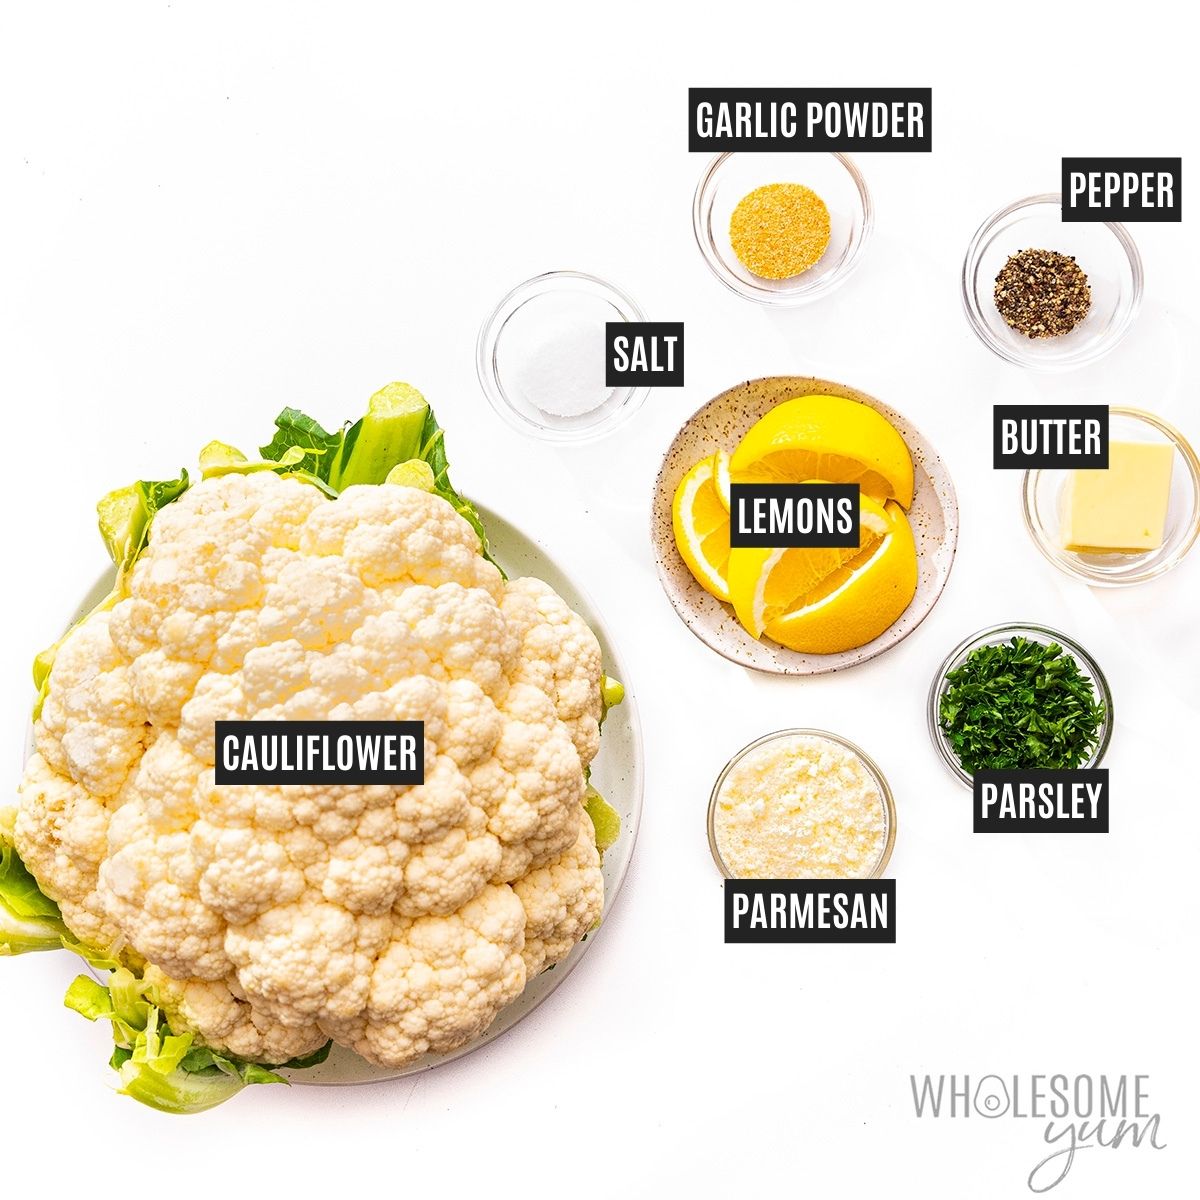 Steamed cauliflower recipe ingredients. 